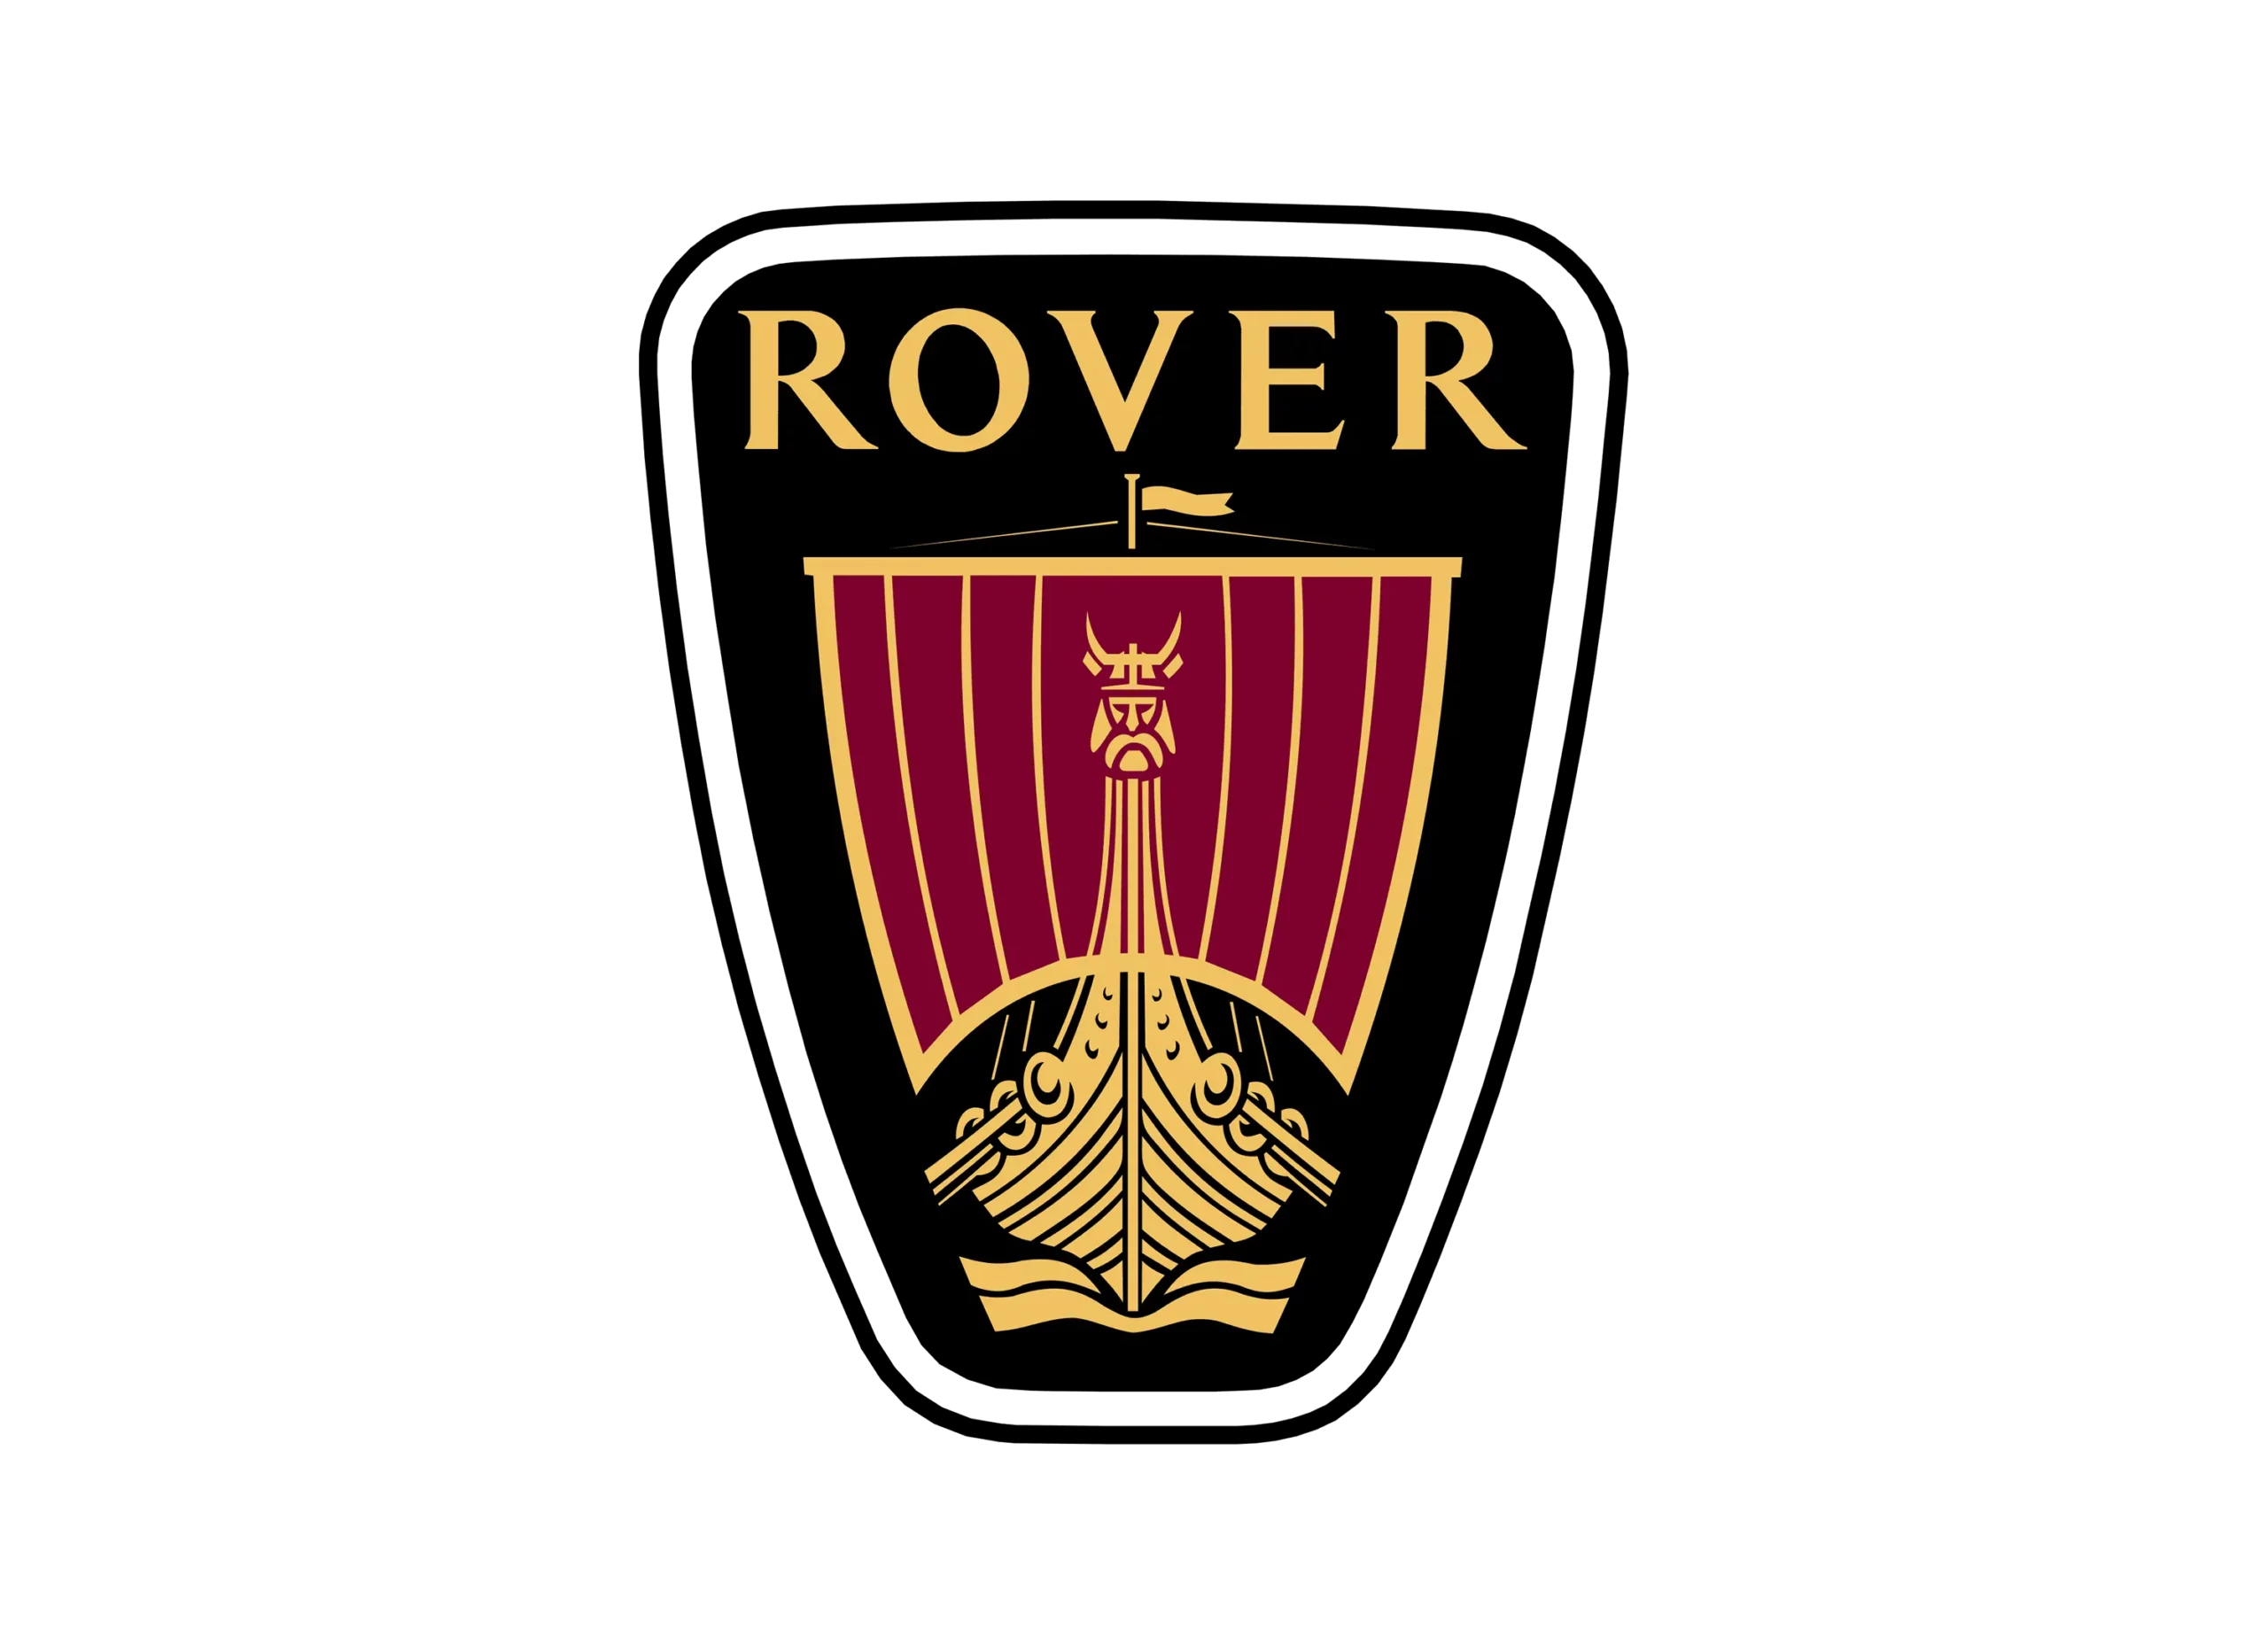 Rover logo 1989-2003